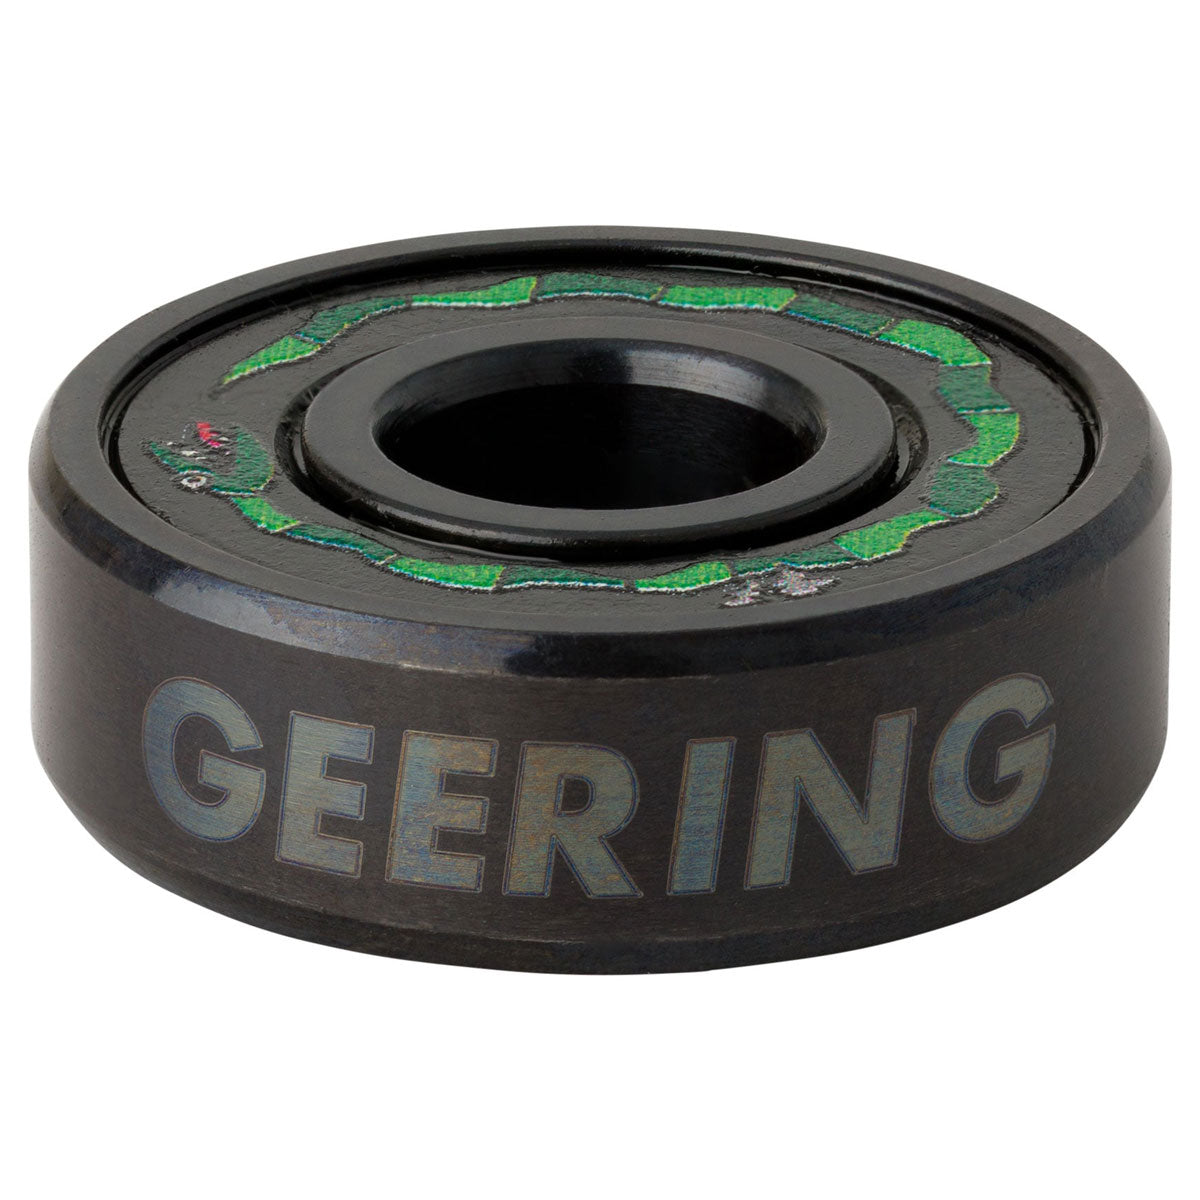 Bronson Breana Geering Pro G3 Bearings - Green image 2